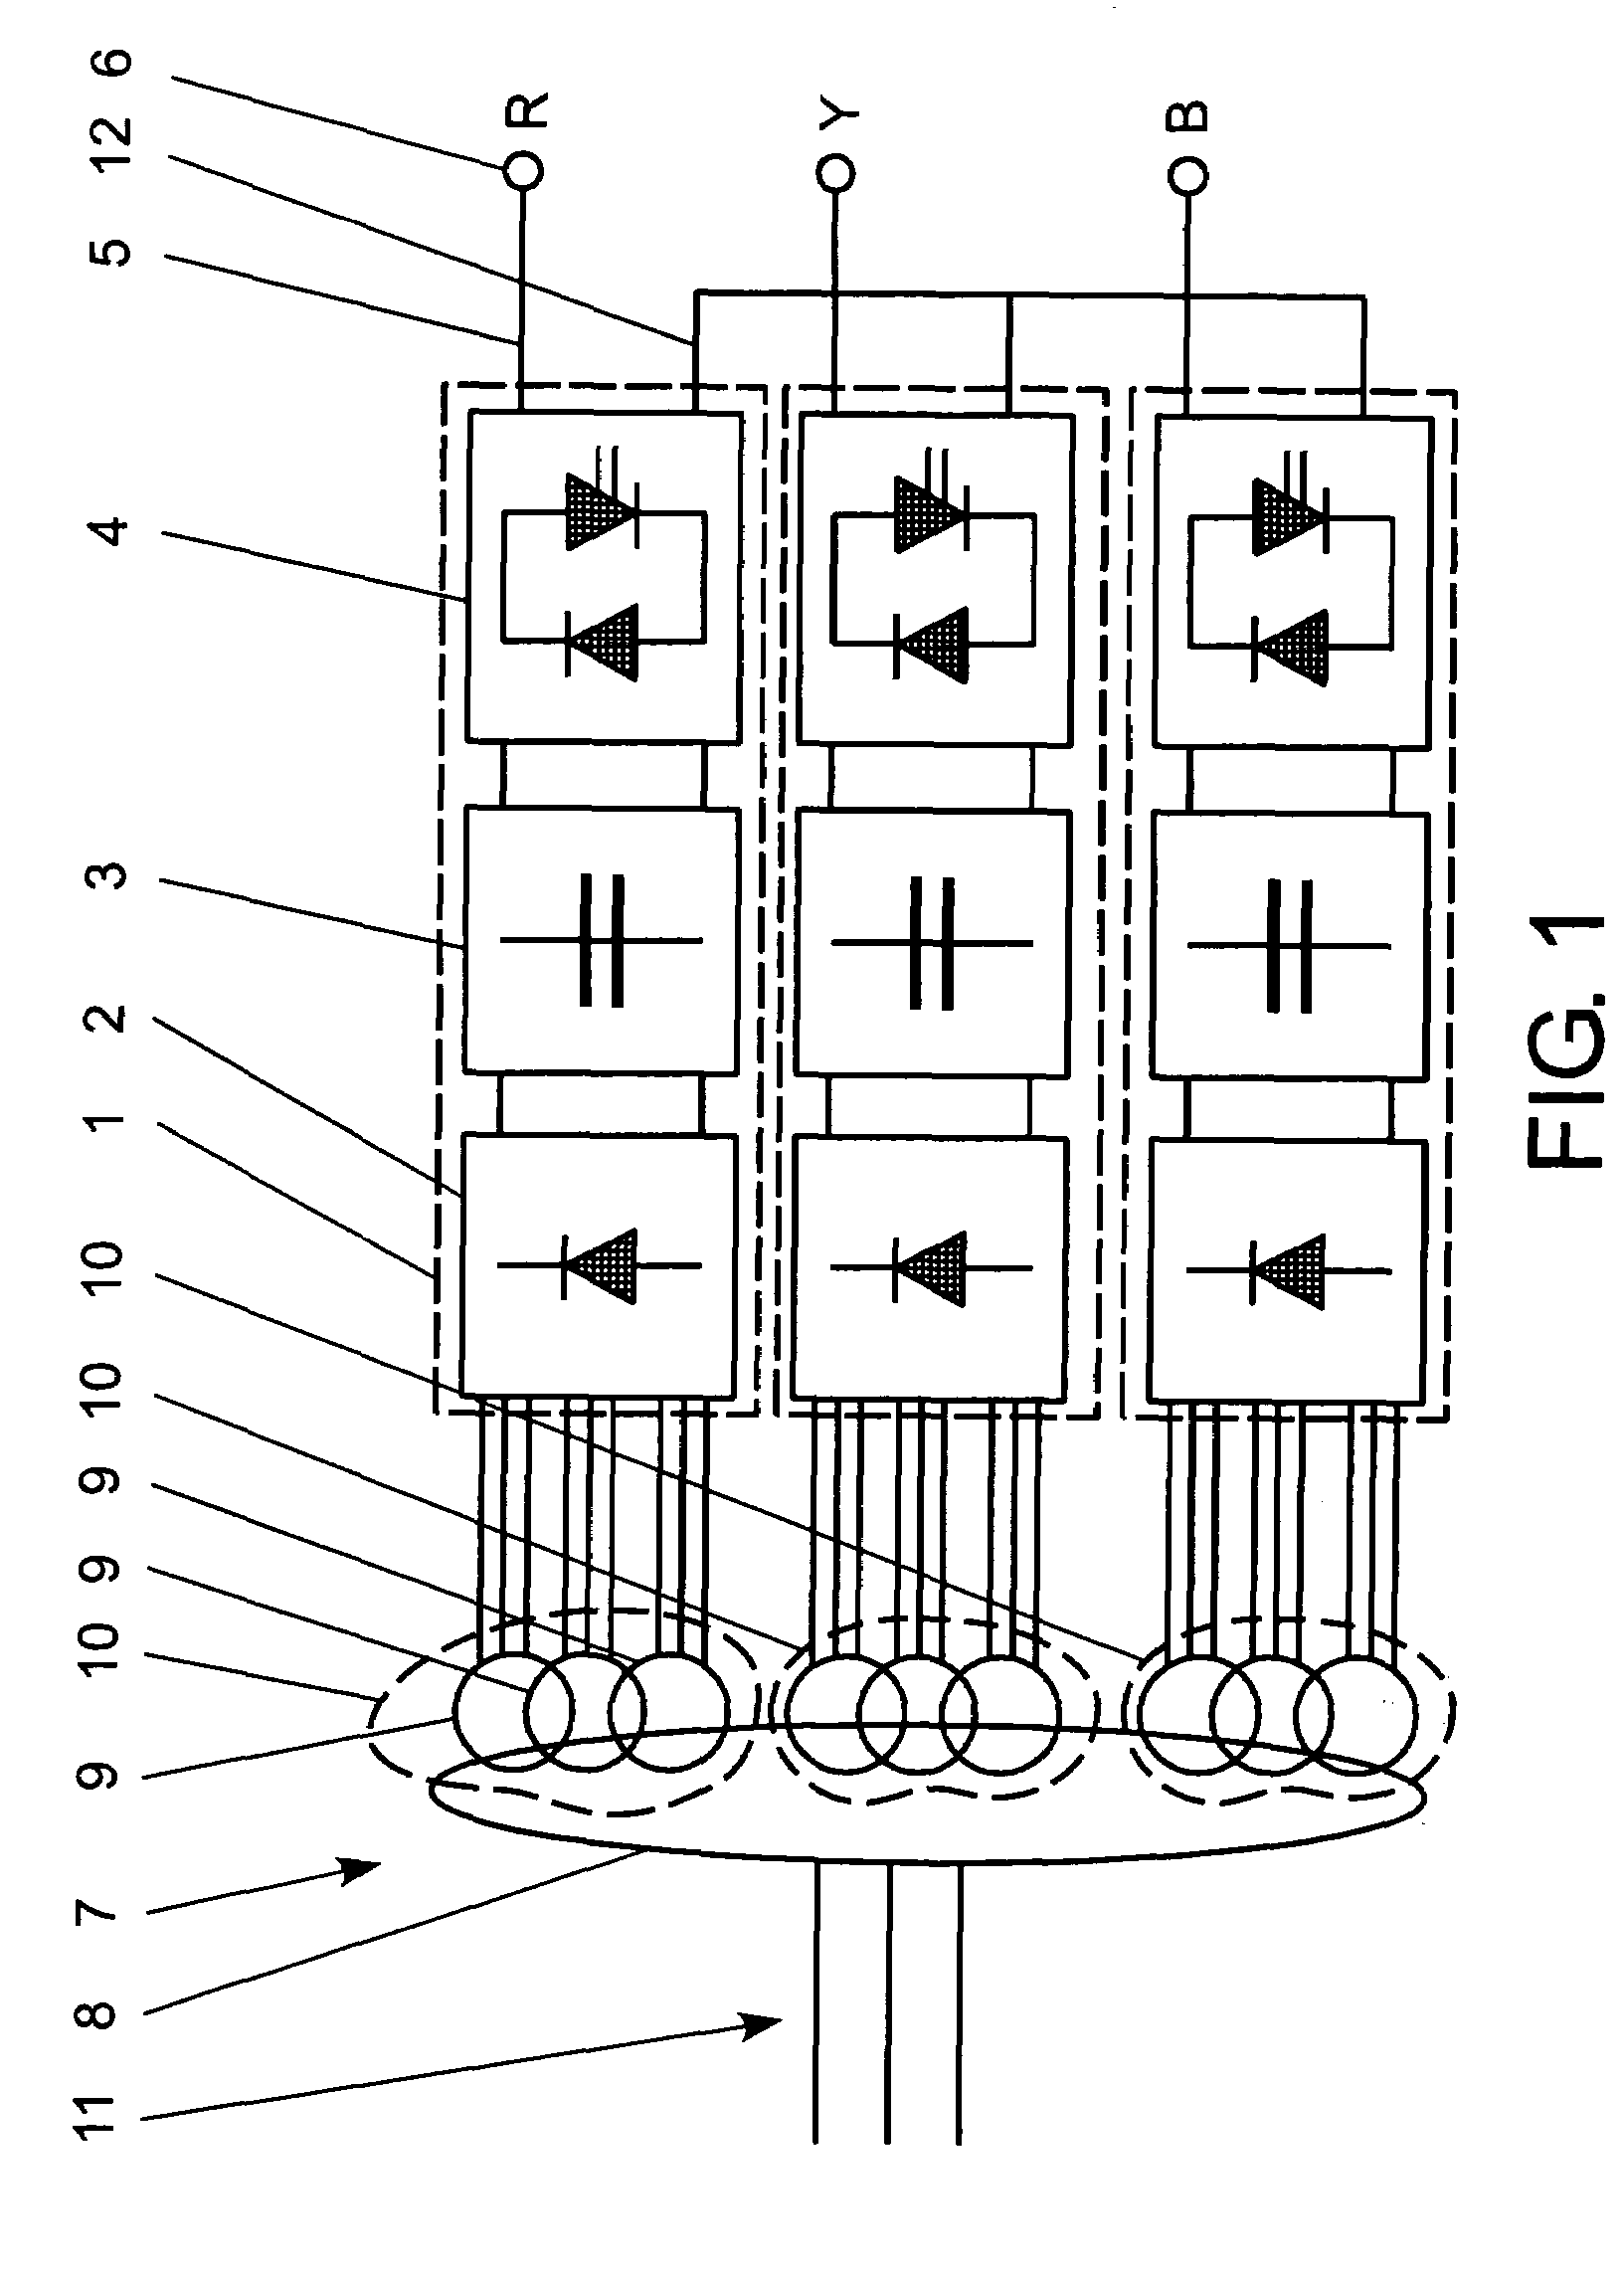 Low-harmonics, polyphase converter circuit